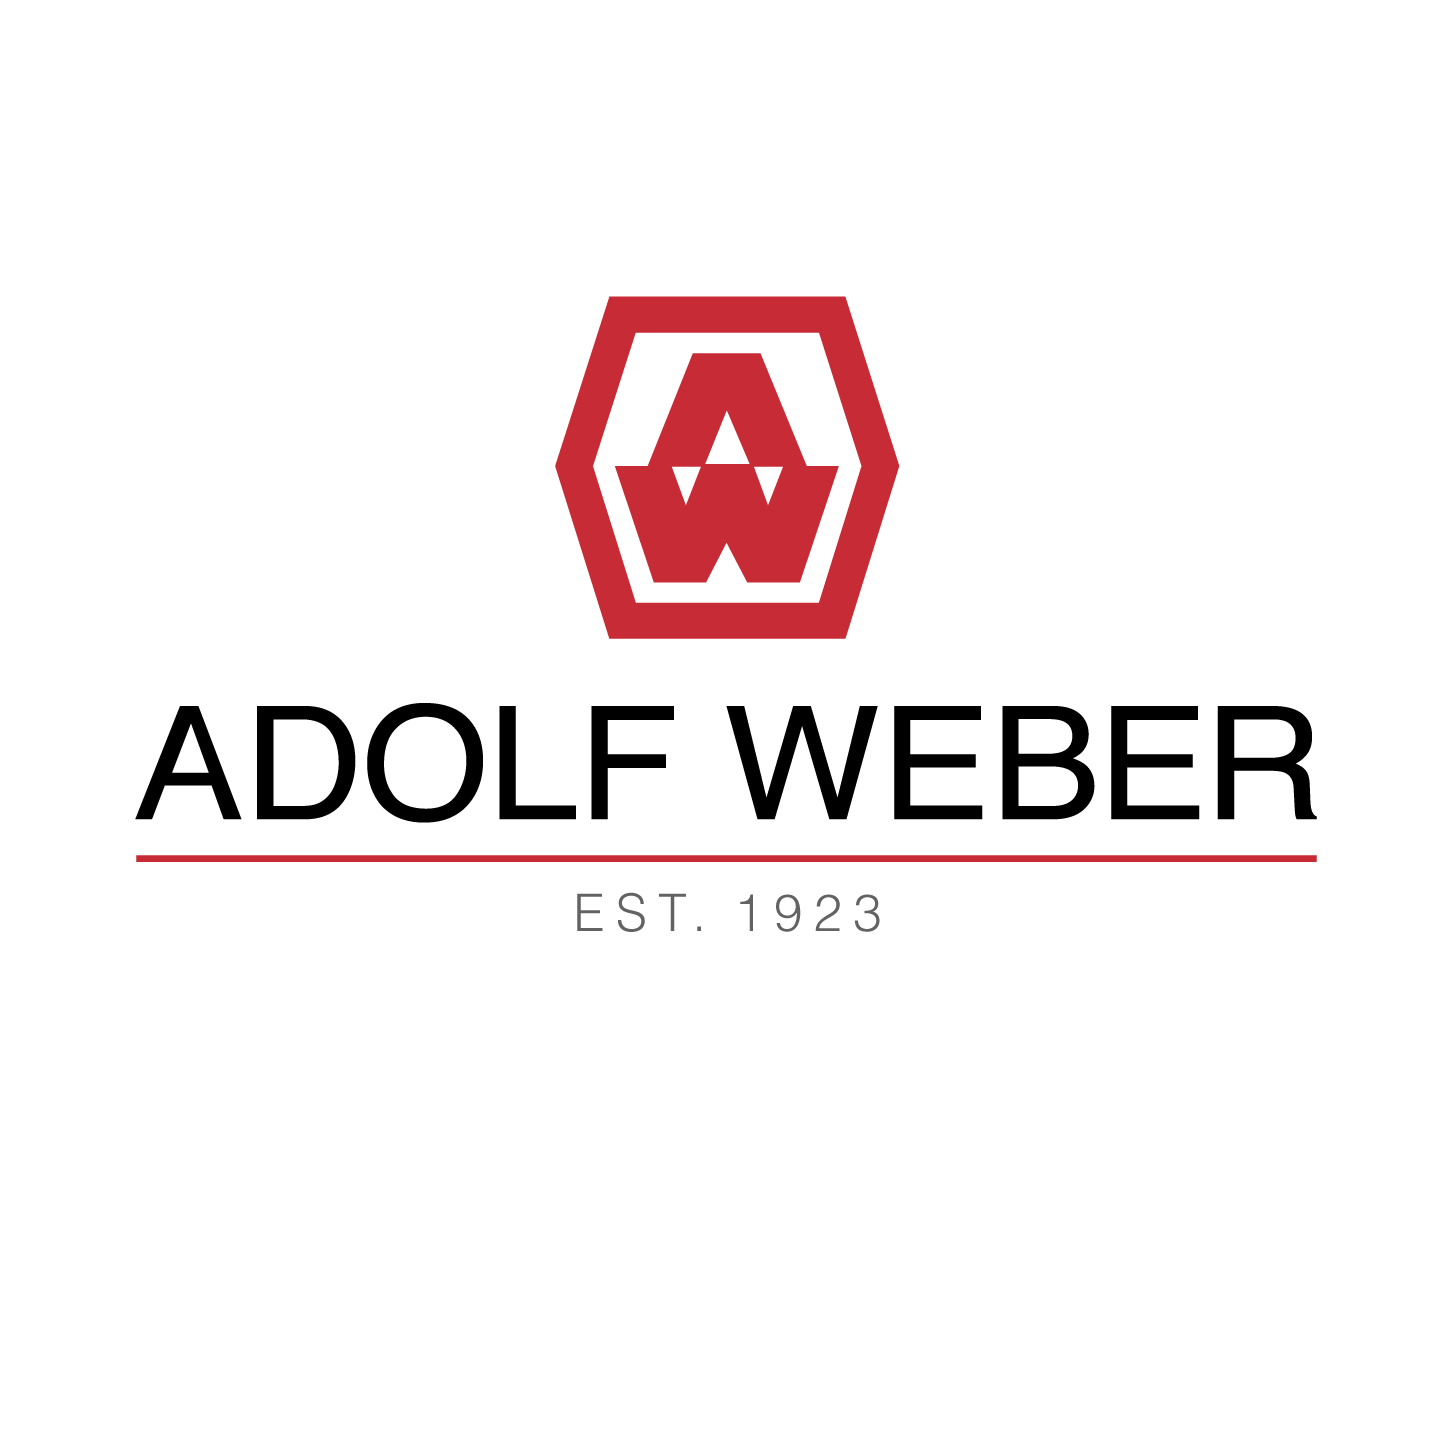 ADOLF WEBER Grundbesitz- und Projektgesellschaft